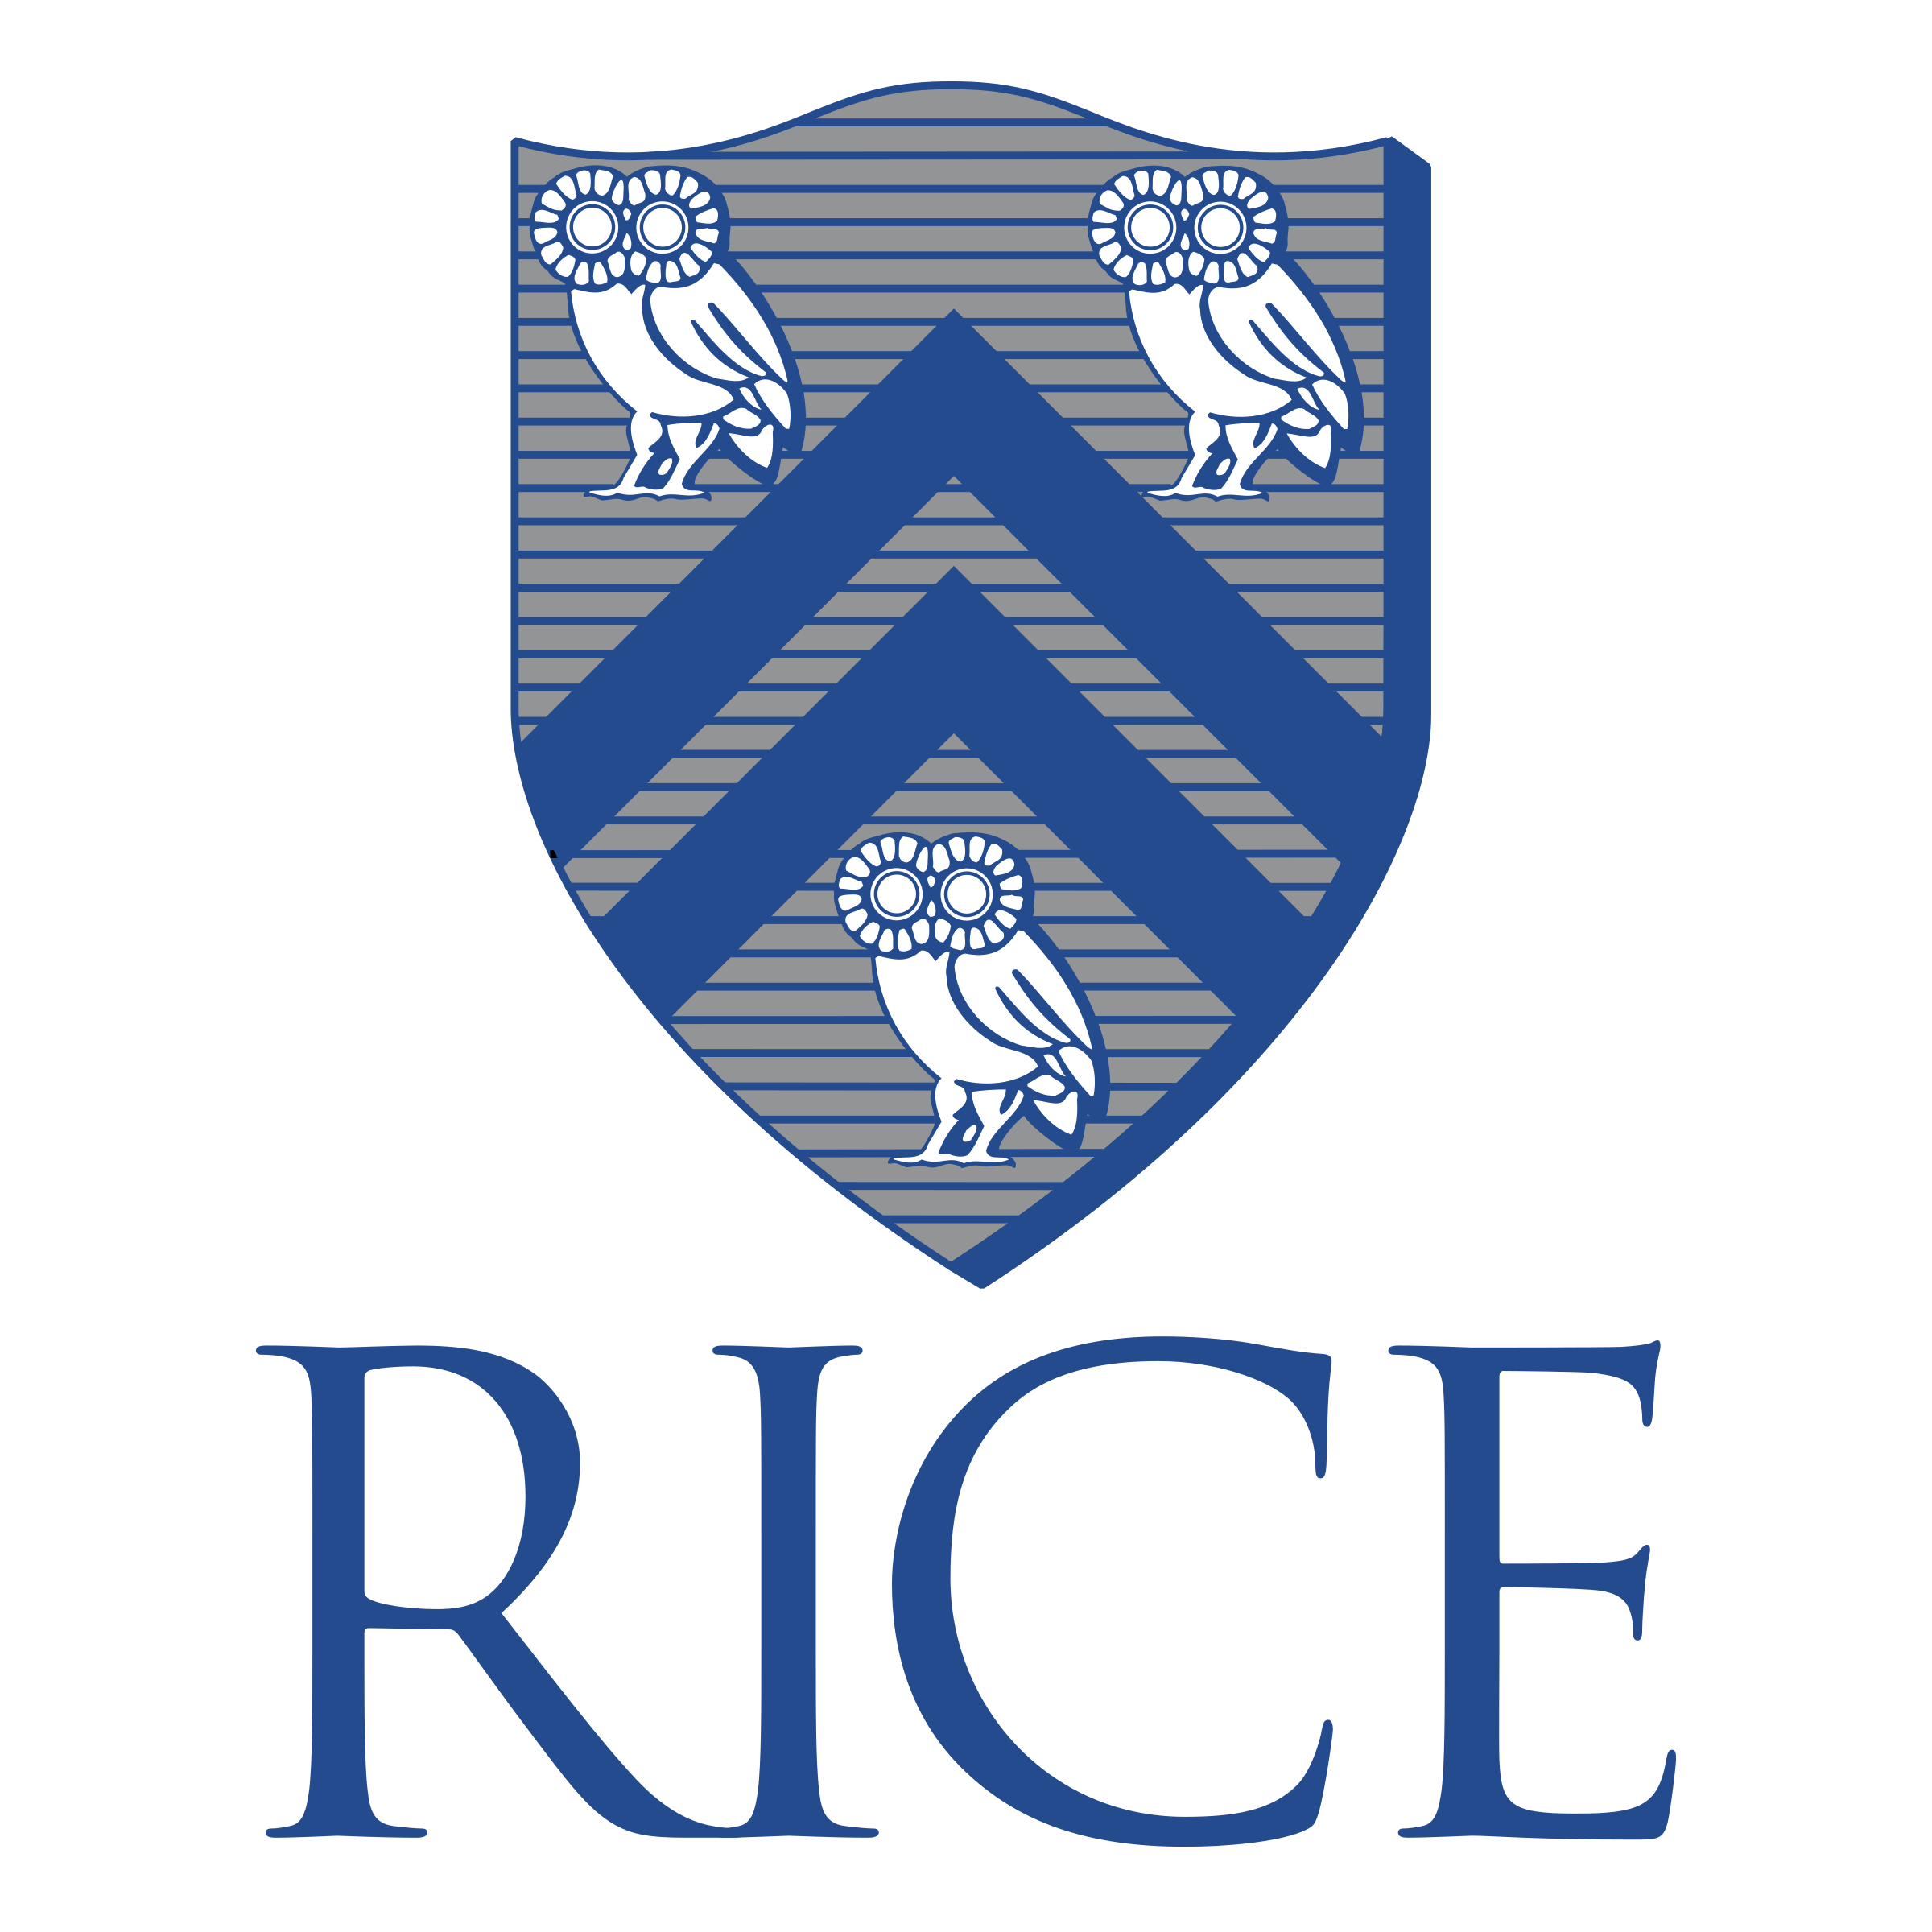 rice-university-logo-png-transparent.png